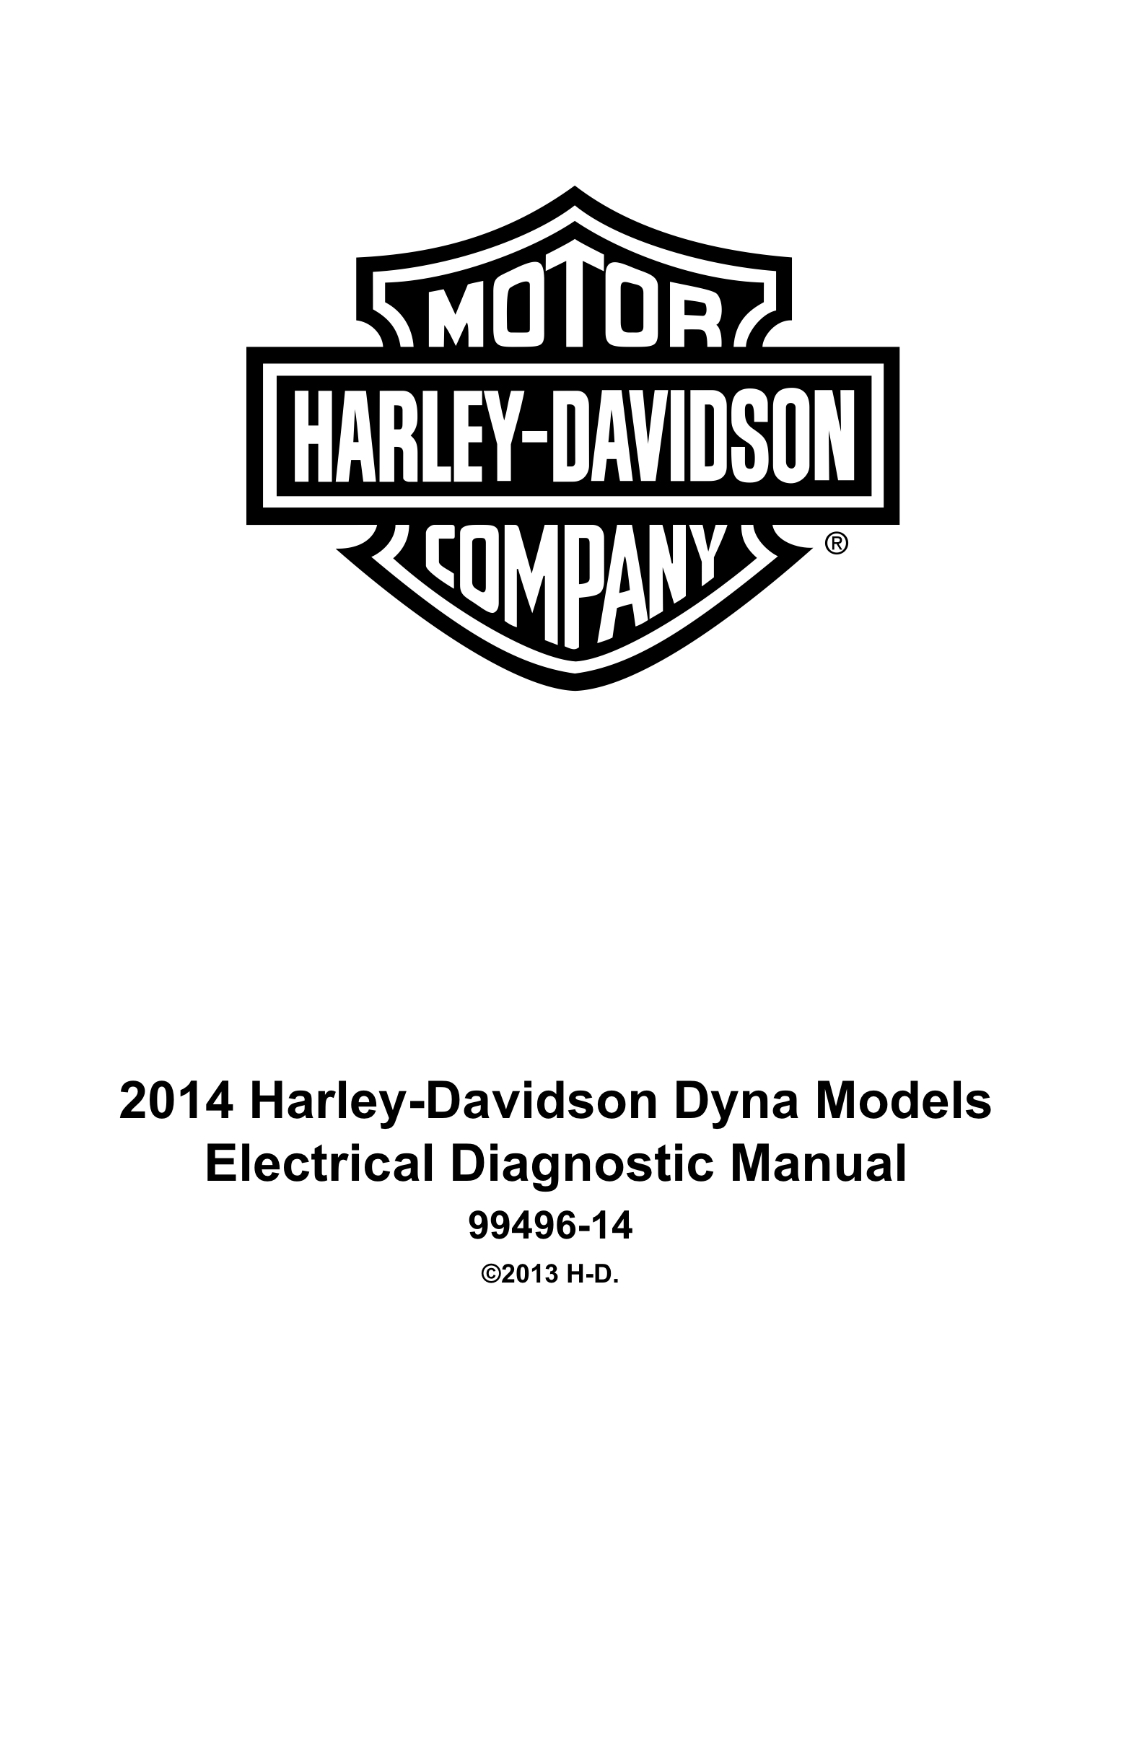 2014哈雷 Dyna 戴纳车型服务和电气诊断手册插图